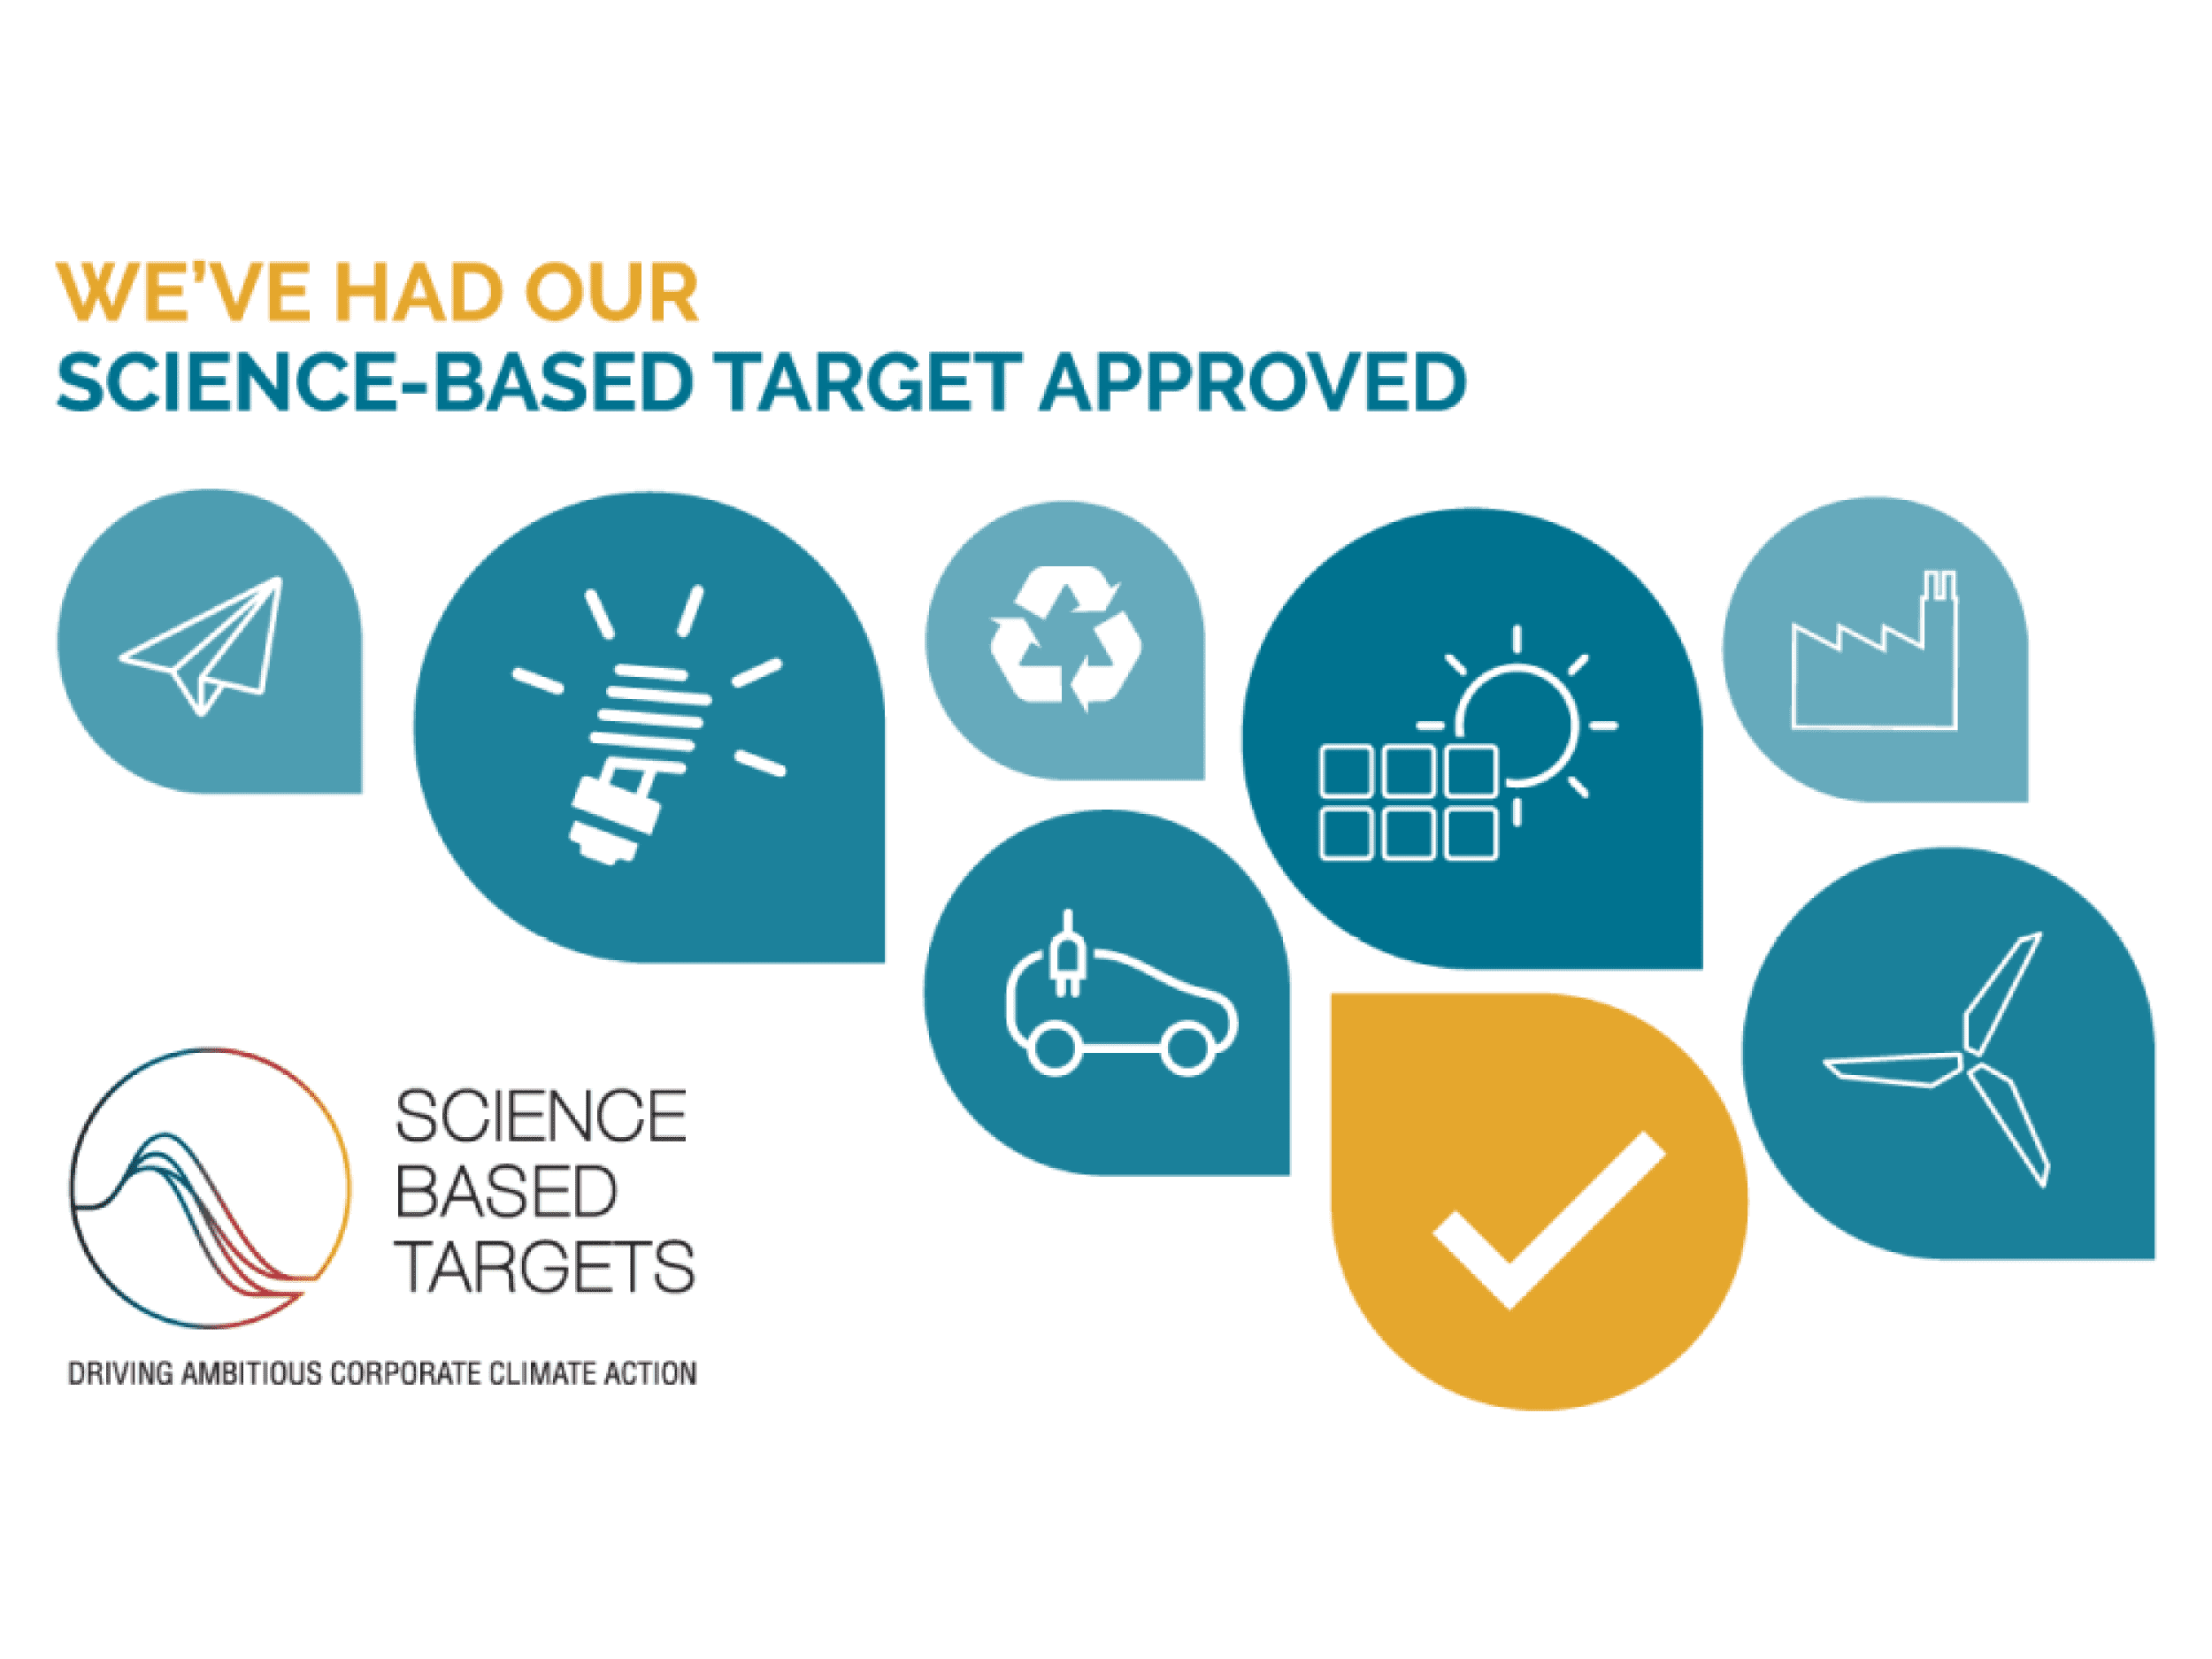 Graphic Packaging reçoit l’approbation de l’initiative Science Based Targets (SBTi) sur ses objectifs de réduction des gaz à effet de serre (GES), validant ainsi l’engagement de l’entreprise à réduire son empreinte carbone.